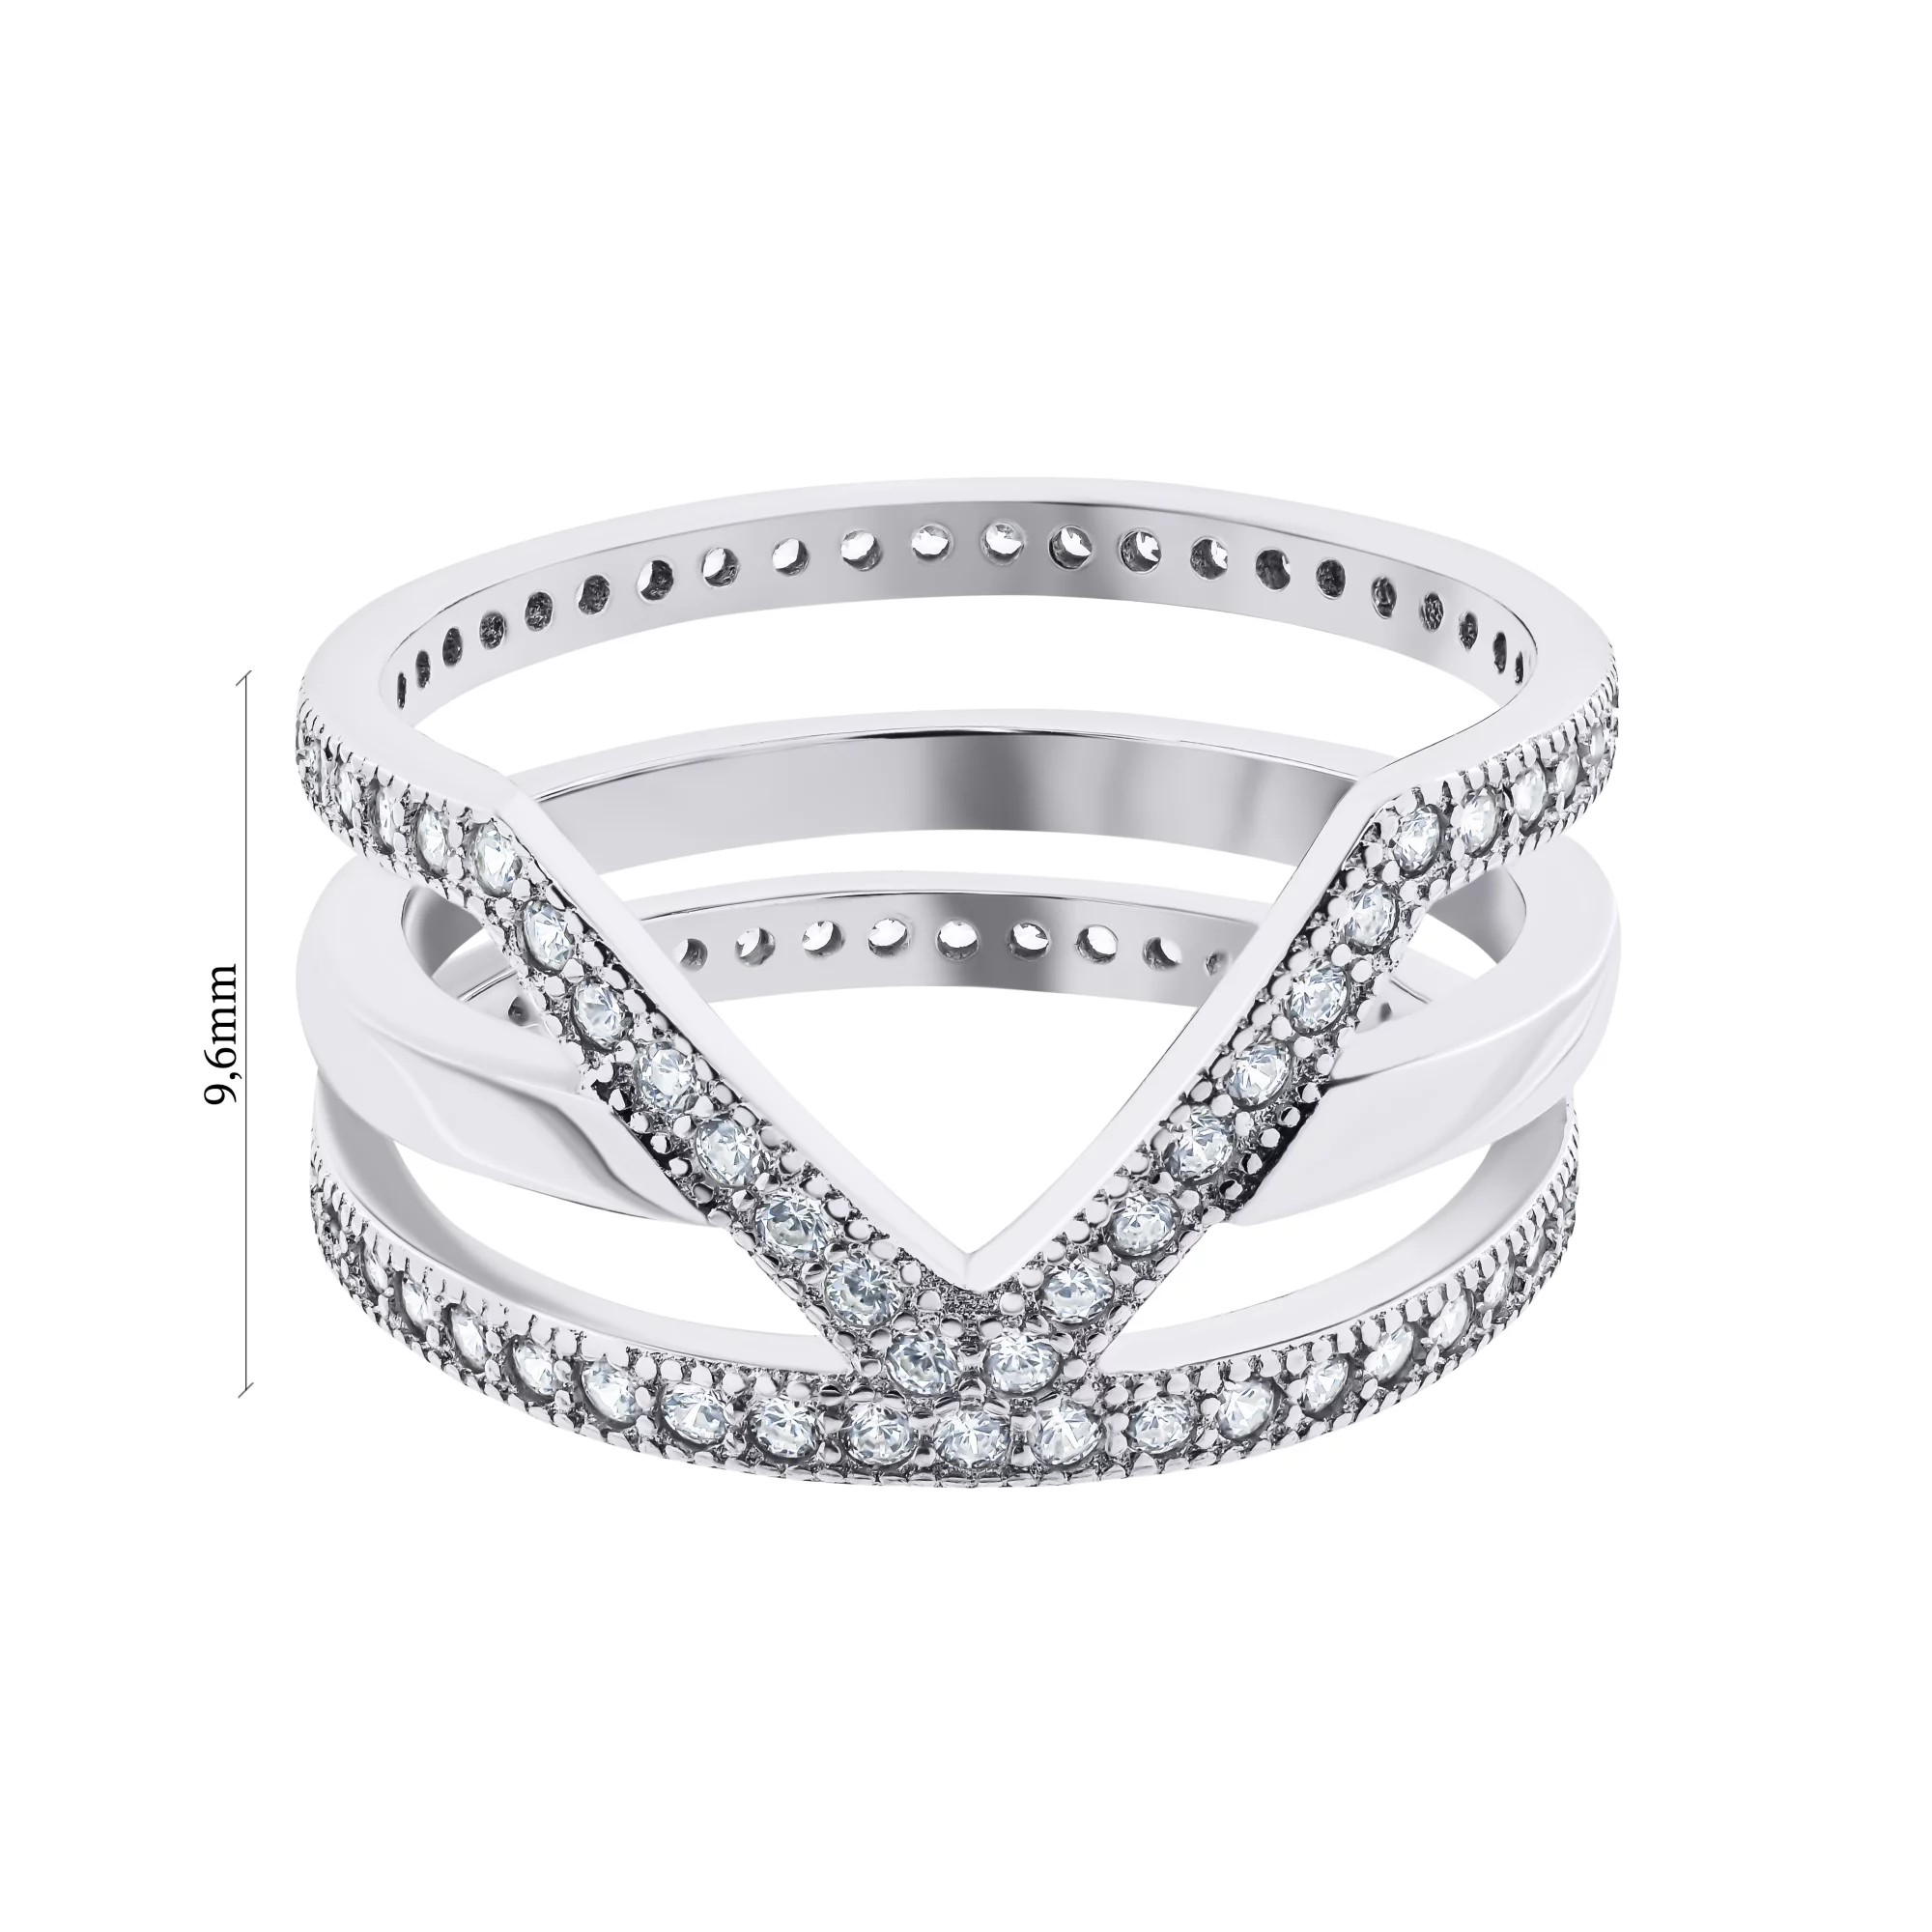 Фаланговое тройное серебряное кольцо с дорожками фианитов - 1528865 – изображение 3